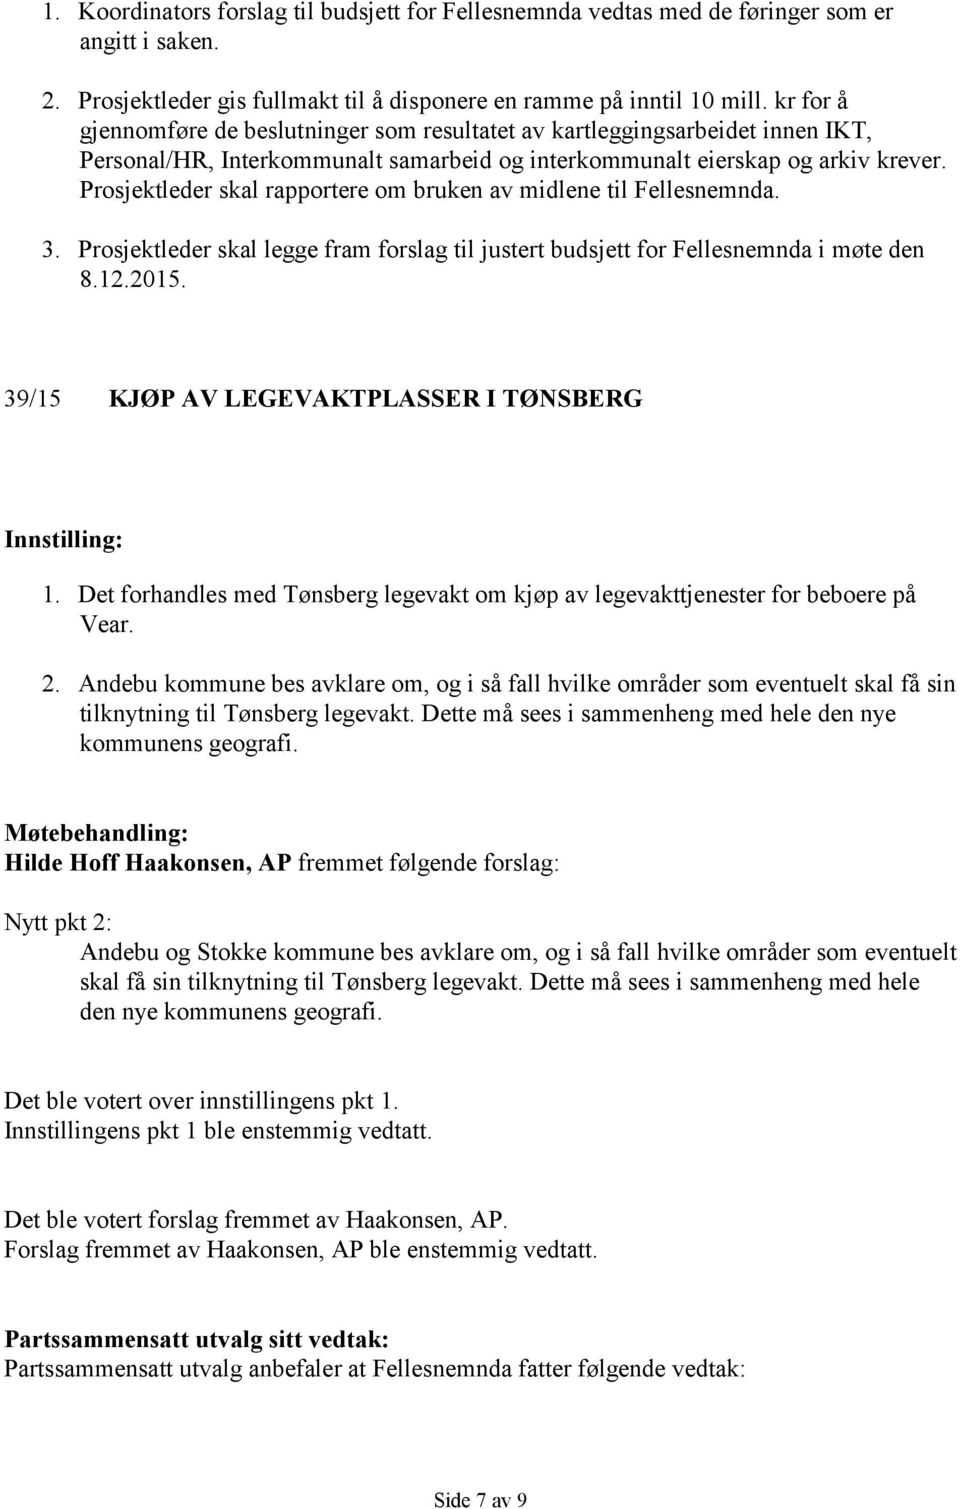 Prosjektleder skal rapportere om bruken av midlene til Fellesnemnda. 3. Prosjektleder skal legge fram forslag til justert budsjett for Fellesnemnda i møte den 8.12.2015.